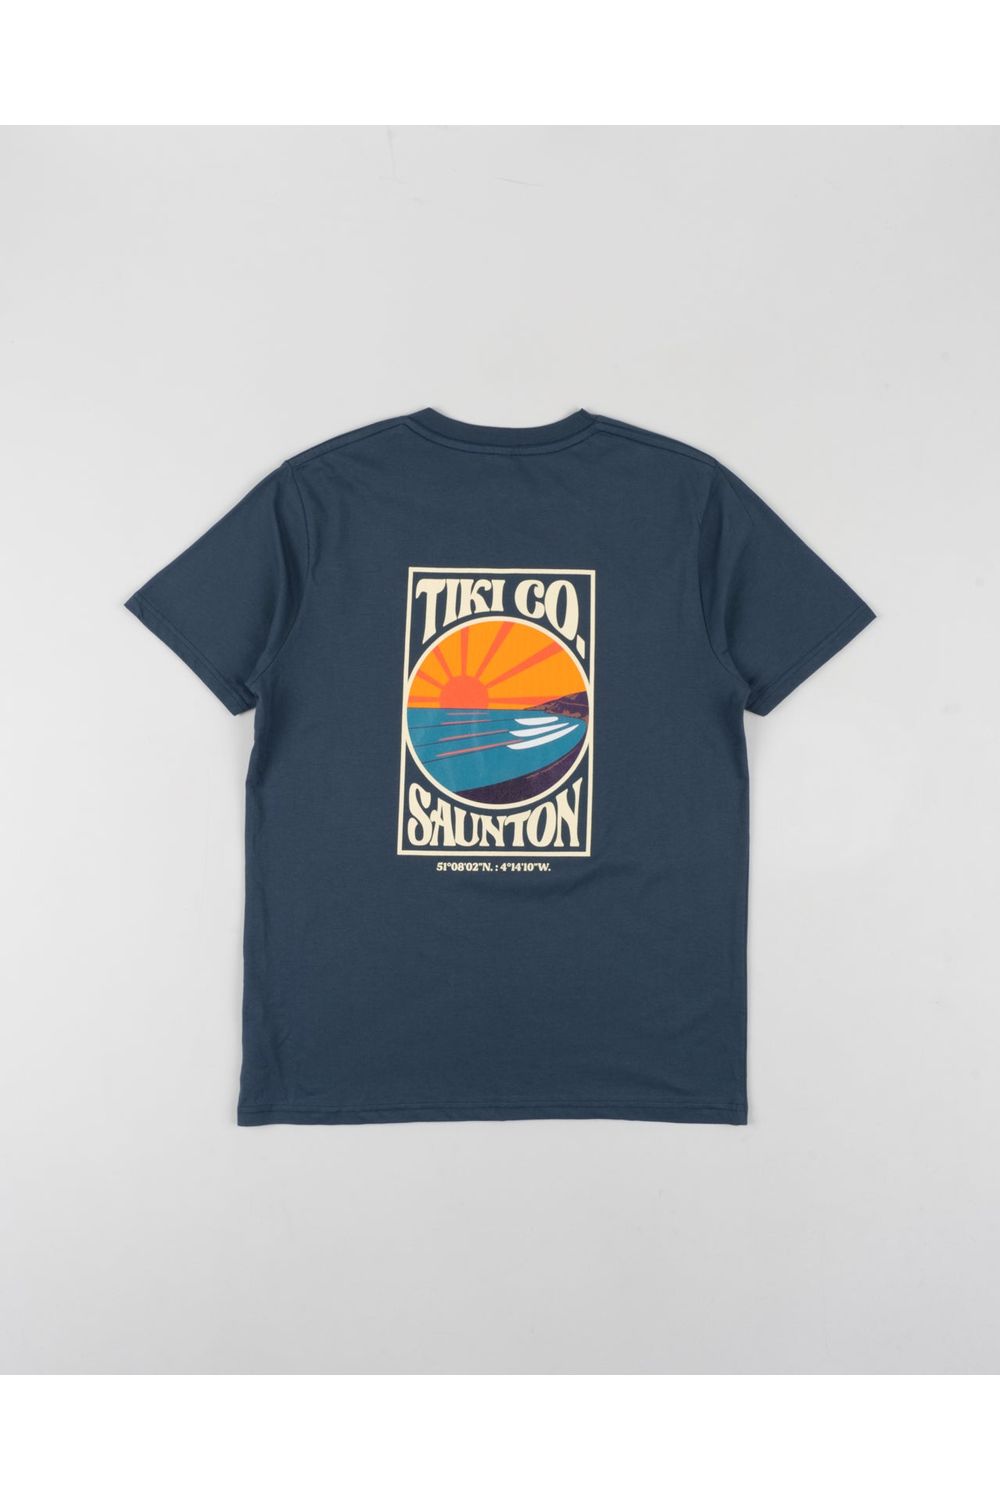 Tiki Saunton T-Shirt Denim Blue